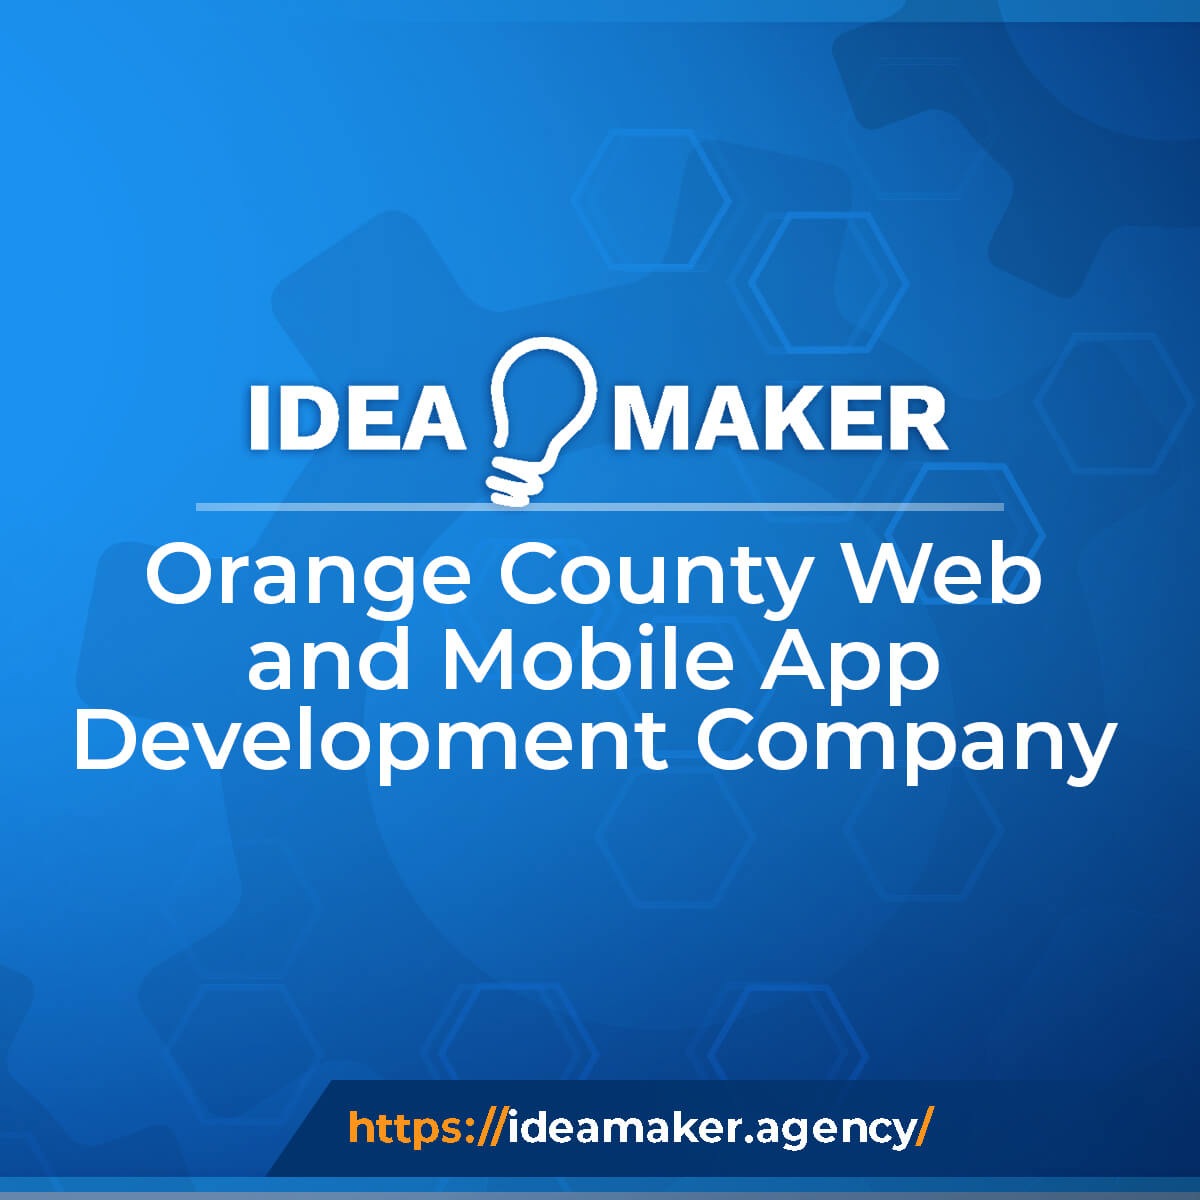 (c) Ideamaker.agency